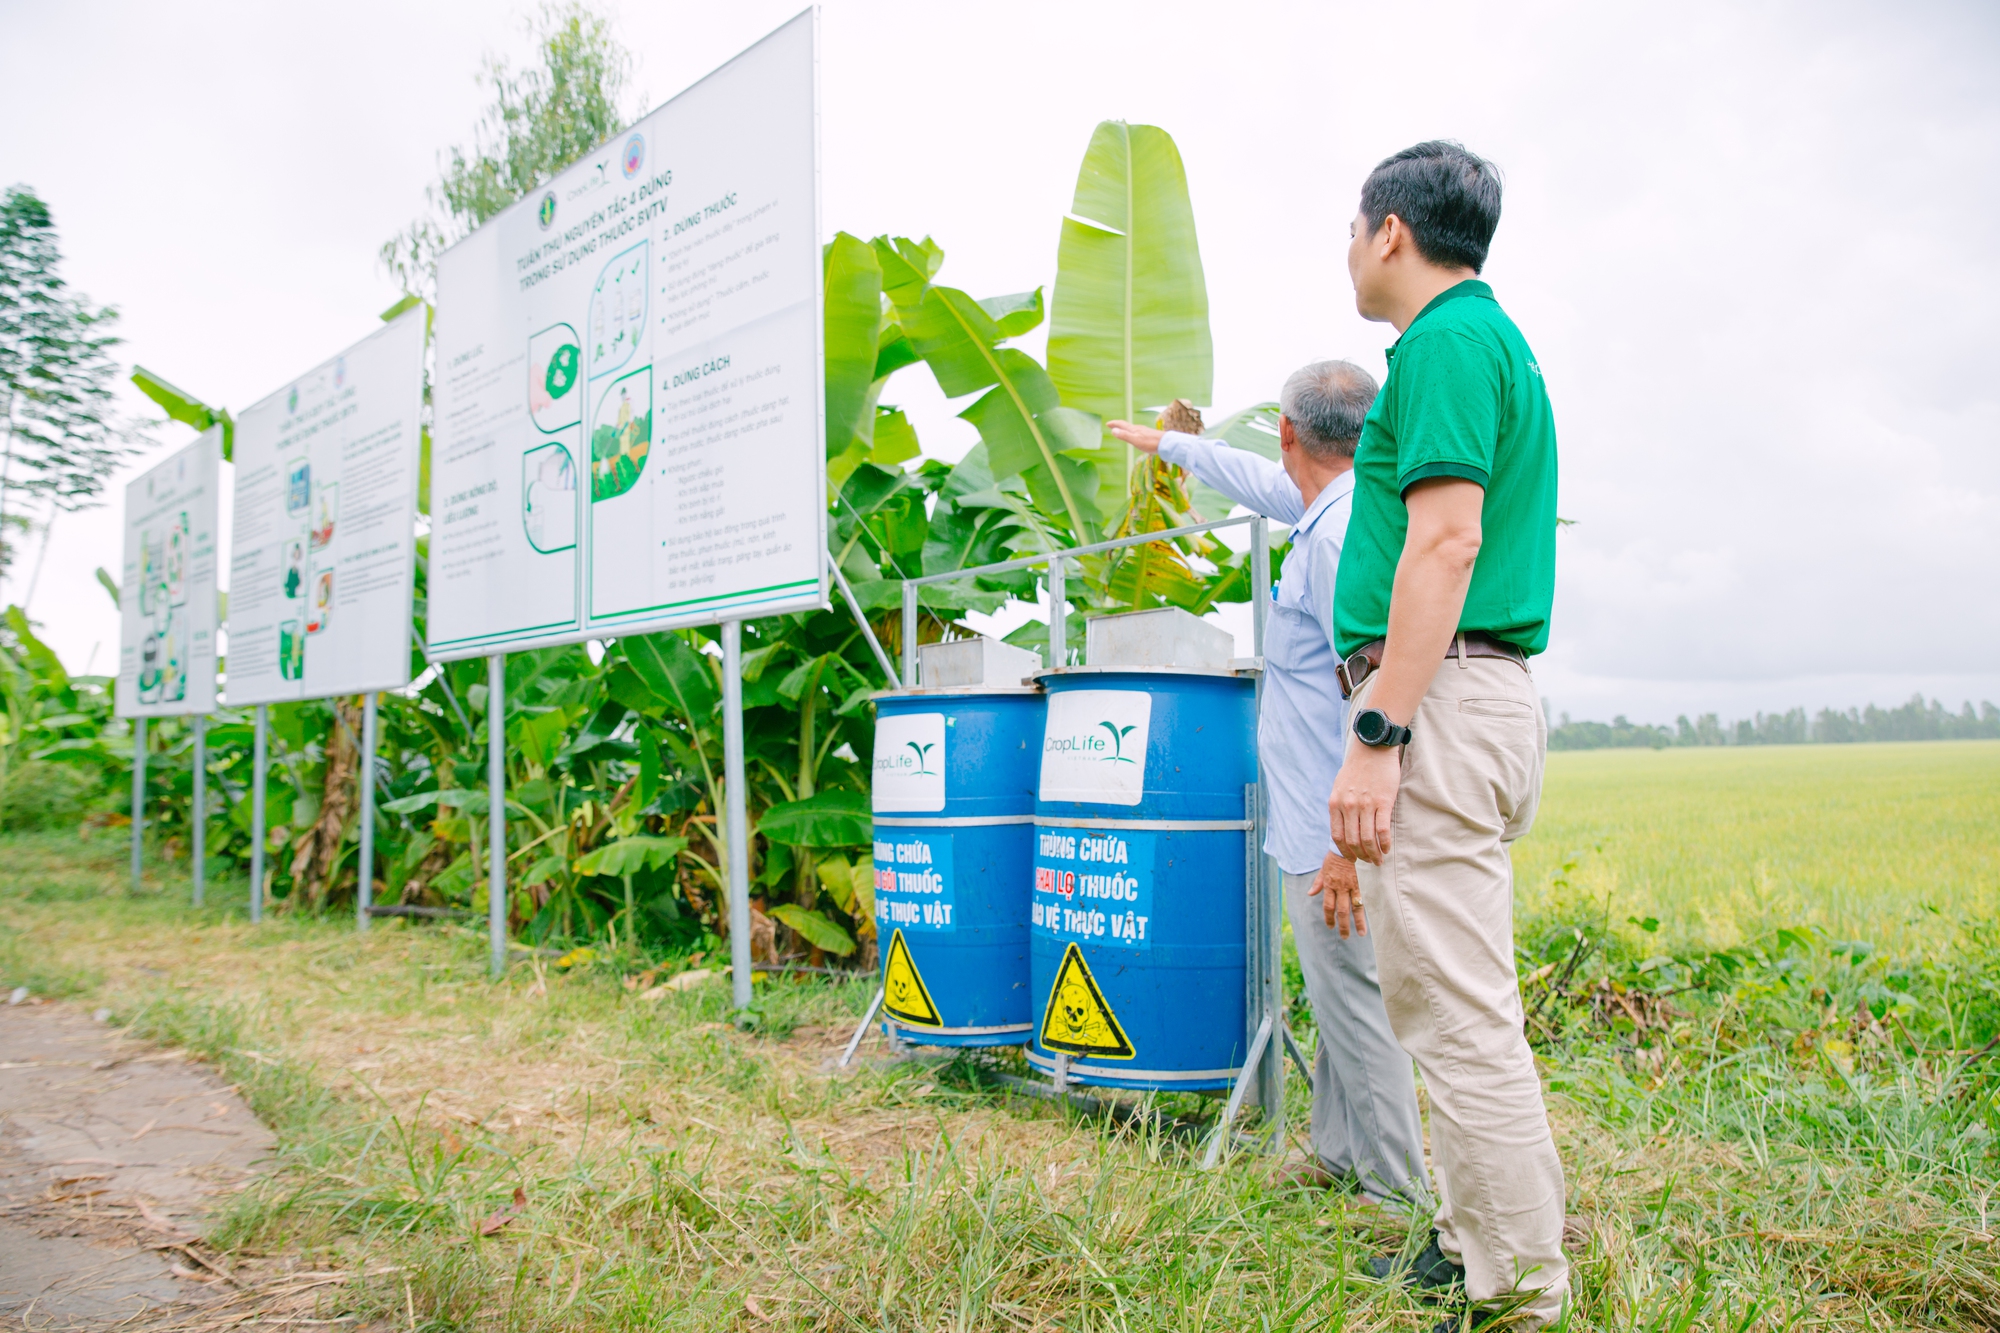 Chủ tịch CropLife Việt Nam: Hướng dẫn nông dân sử dụng thuốc gắn với quản lý dư lượng thuốc bảo vệ thực vật - Ảnh 4.